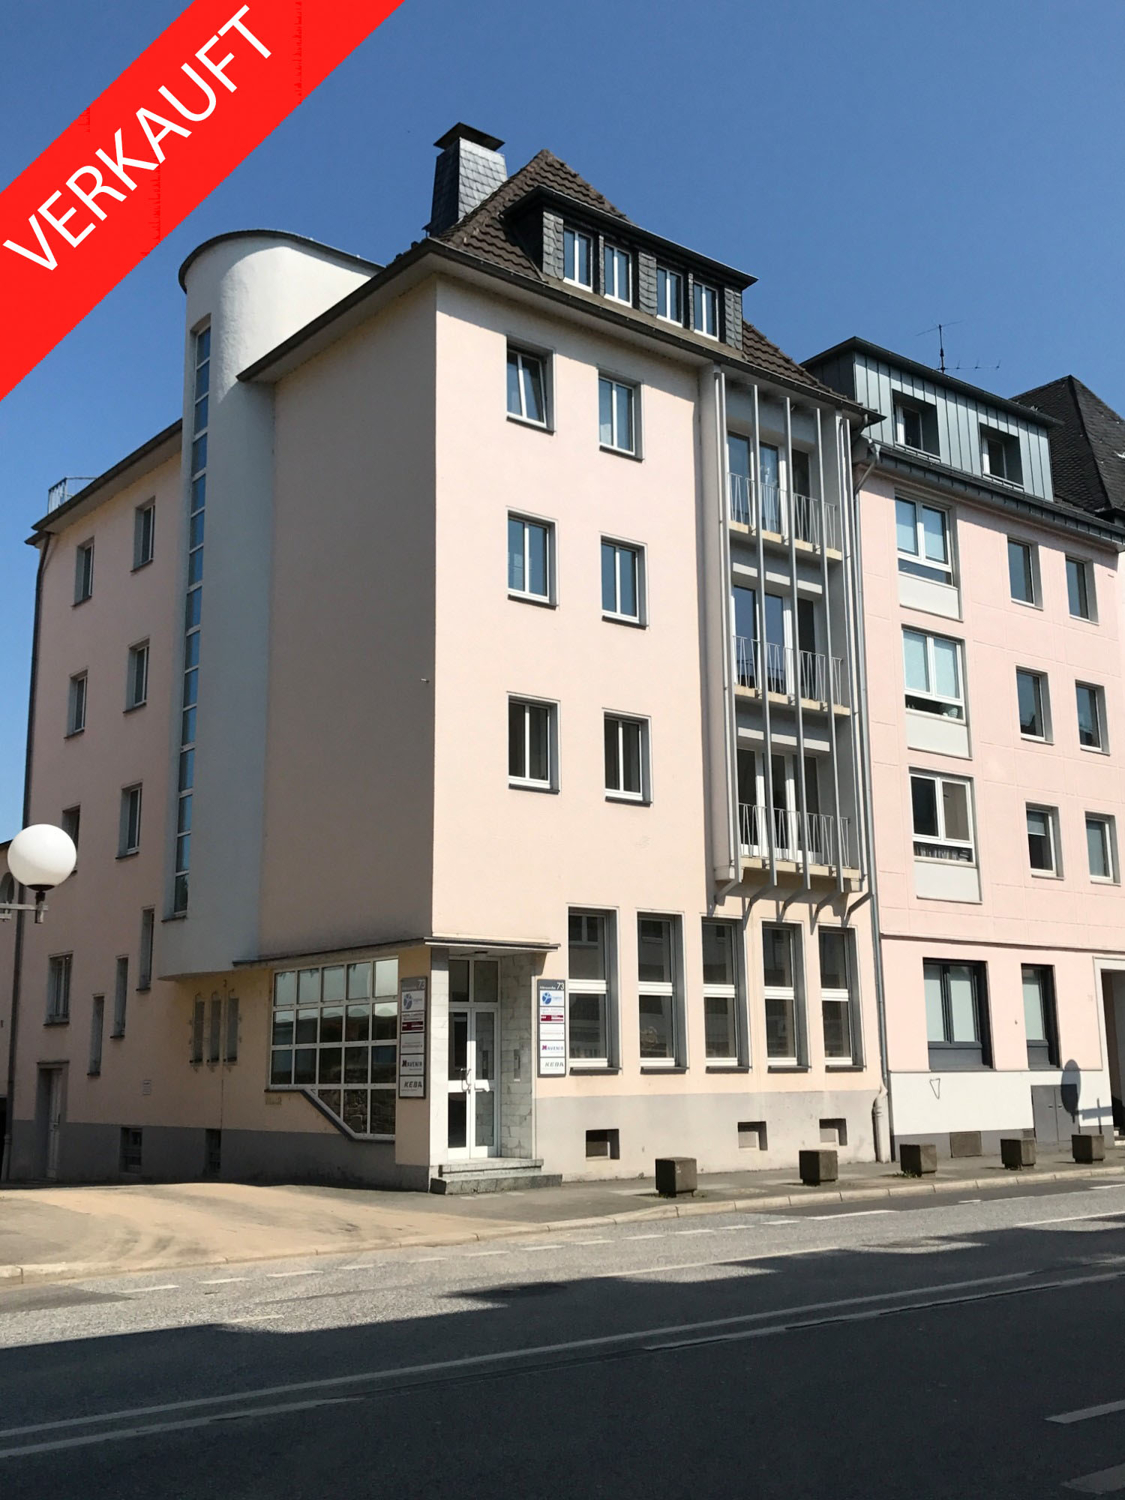 Investment / Wohn- und Geschäftshäuser in Südstadt - Adenauerallee durch Engel & Völkers verkauft